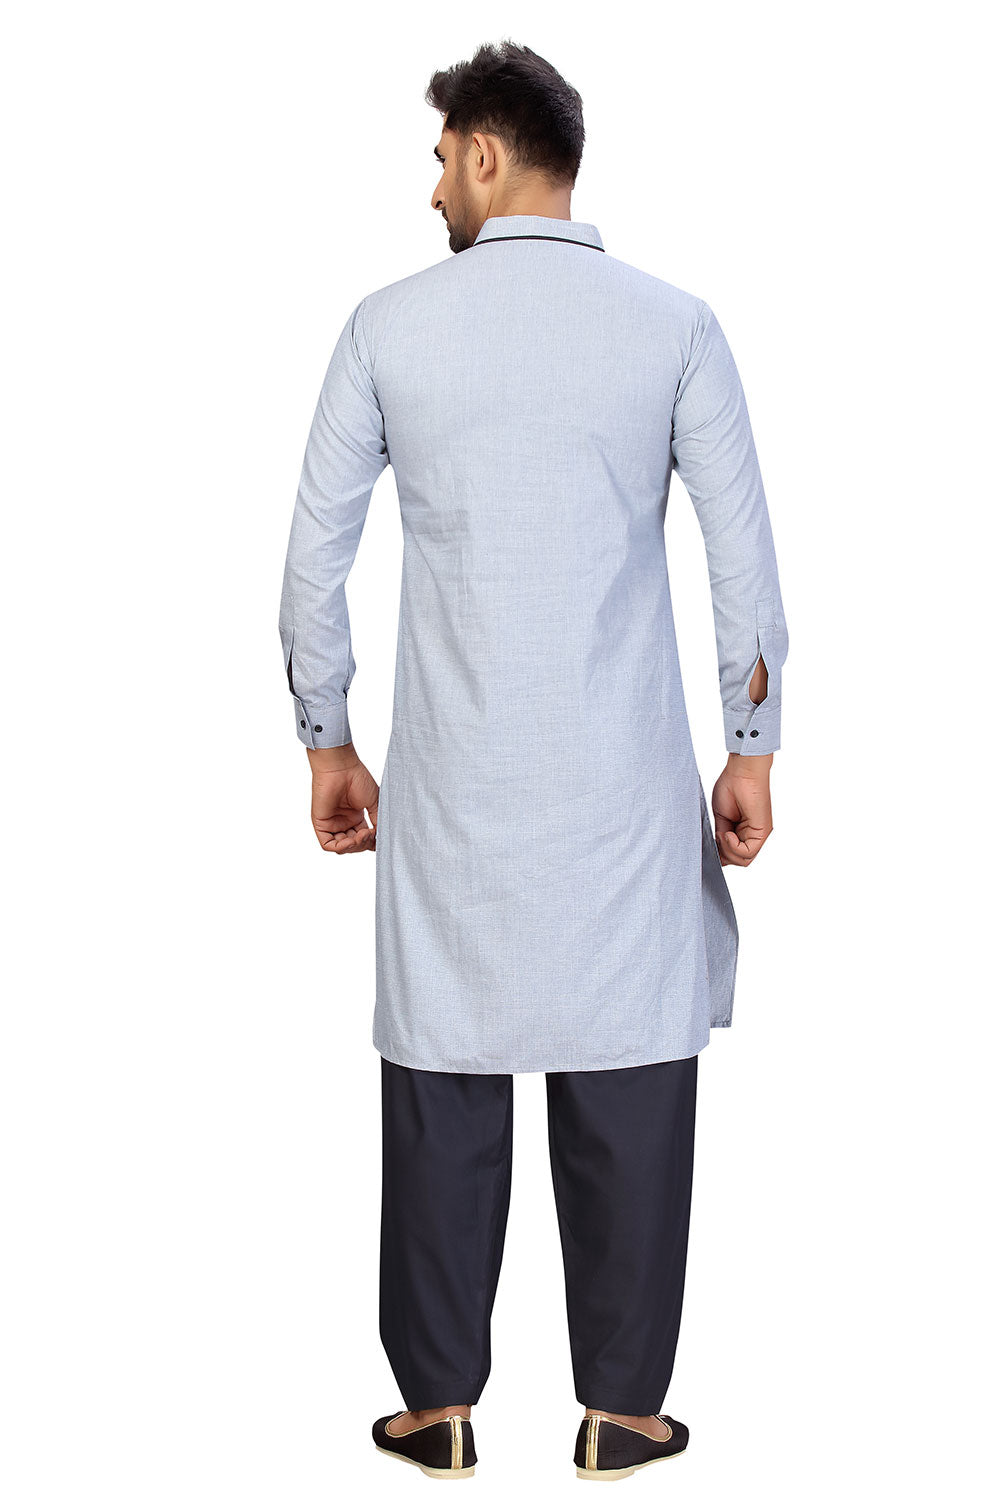 Buy Men's Blended Cotton Solid Pathani Set in Sky Blue Online - Back